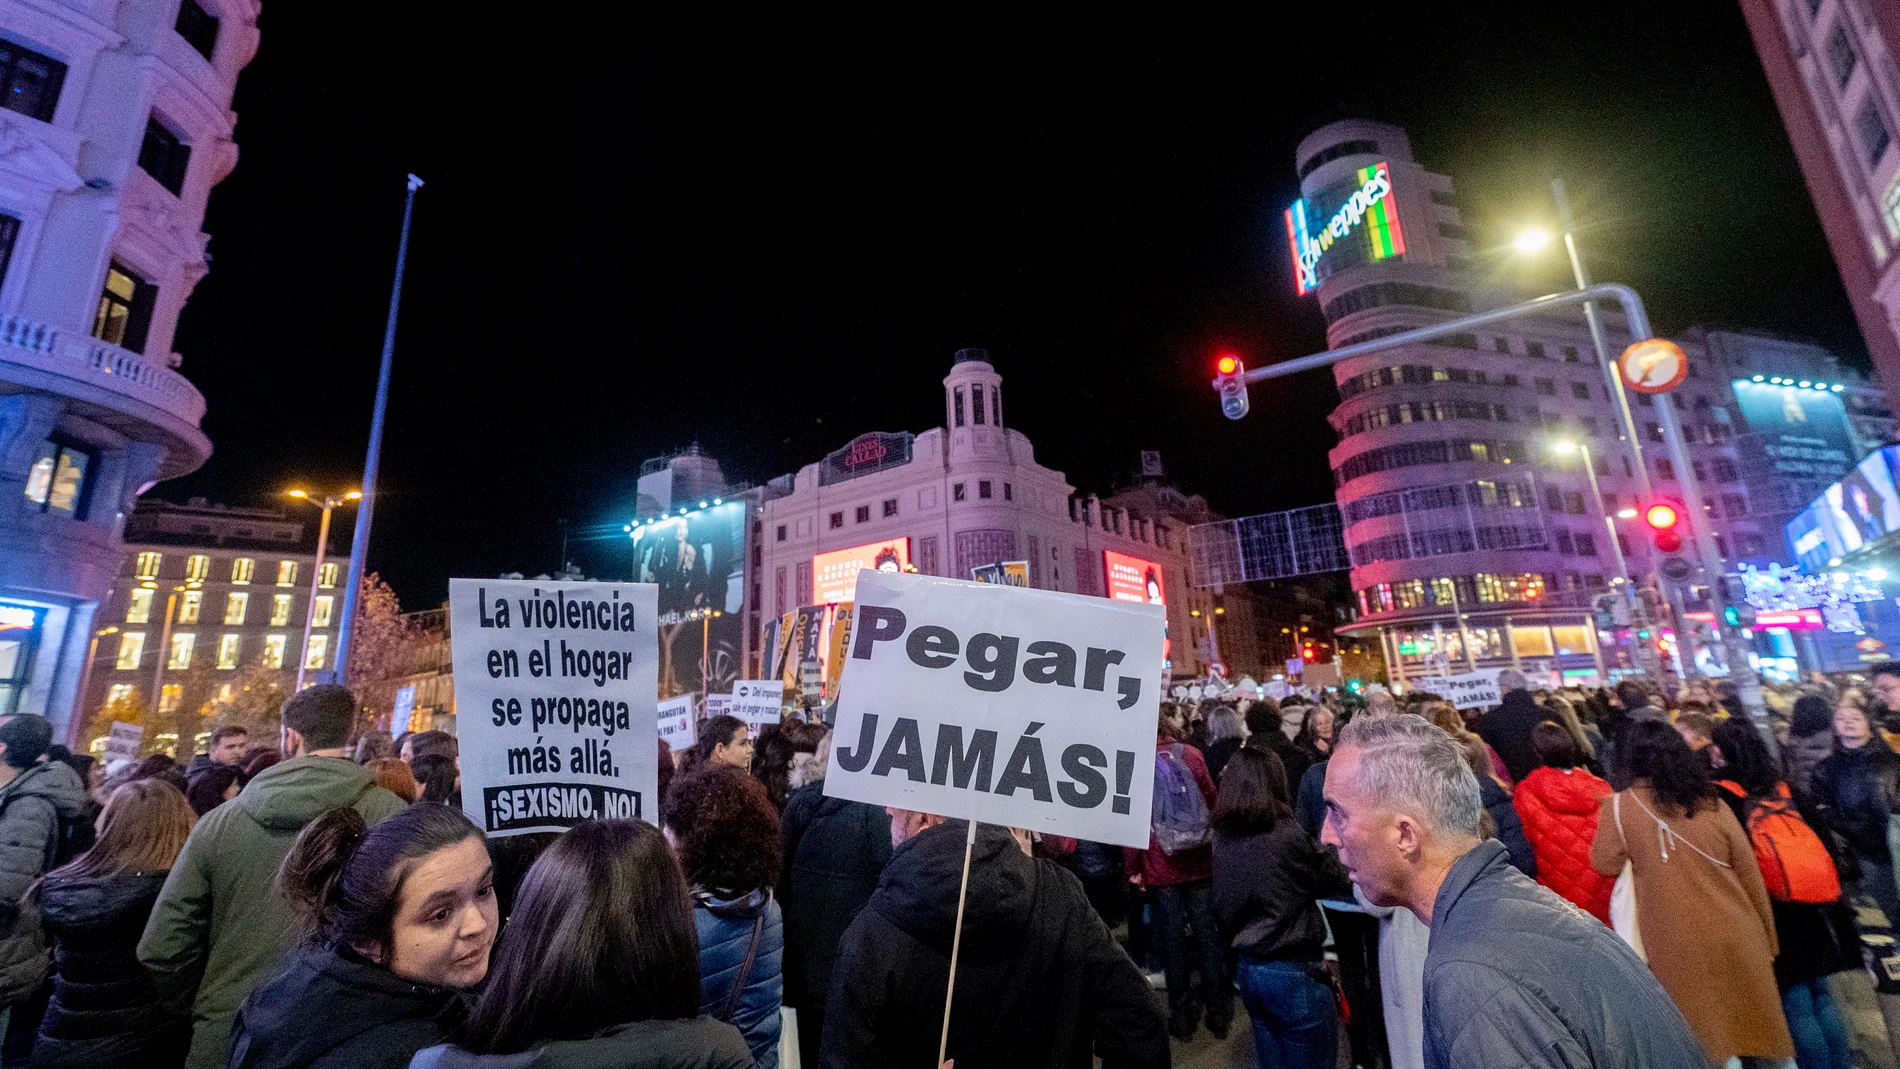 Una mujer sujeta una pancarta durante una manifestación contra las violencias machistas, a 25 de noviembre de 2022, en Madrid (España). La protesta ha sido convocada por el Foro de Madrid contra la Violencia a las Mujeres y el Movimiento Feminista de Madrid, bajo el lema ‘El machismo mata, viola, explota y borra a las mujeres, ¡Basta ya!’. Esta es una de las manifestaciones convocadas hoy en España para conmemorar el Día Internacional de la Eliminación de la Violencia contra la Mujer declarado por la Asamblea General de Naciones Unidas para sensibilizar a los ciudadanos respecto al problema. El día 25 fue elegido en 1999 por la ONU para rememorar el asesinato en República Dominicana en 1960 de las hermanas Mirabal, activistas políticas que se opusieron a la dictadura del entonces dictador de ese país Rafael Leónidas Trujillo.25 NOVIEMBRE 2022;MADRID;MANIFESTACIÓN;25N;FORO DE MADRID CONTRA LA VIOLENCIA A LAS MUJERES;MOVIMIENTO FEMINISTA 